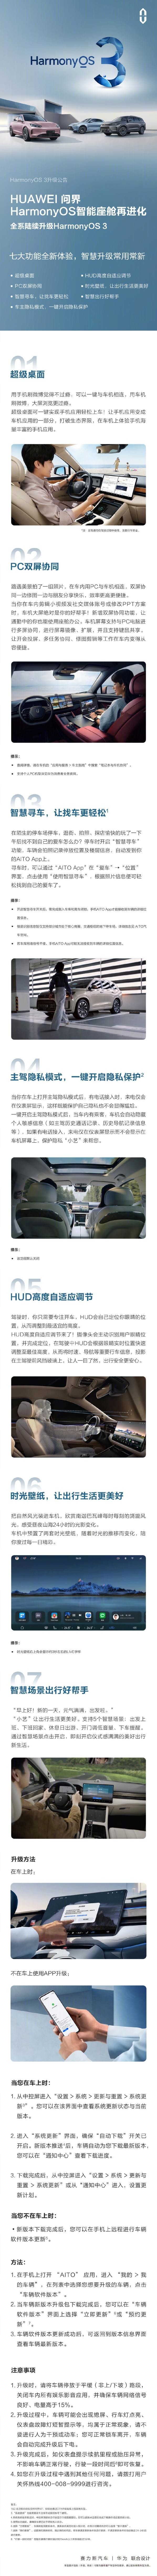 余承东宣布问界汽车全系升级鸿蒙OS 3 七大功能新体验！